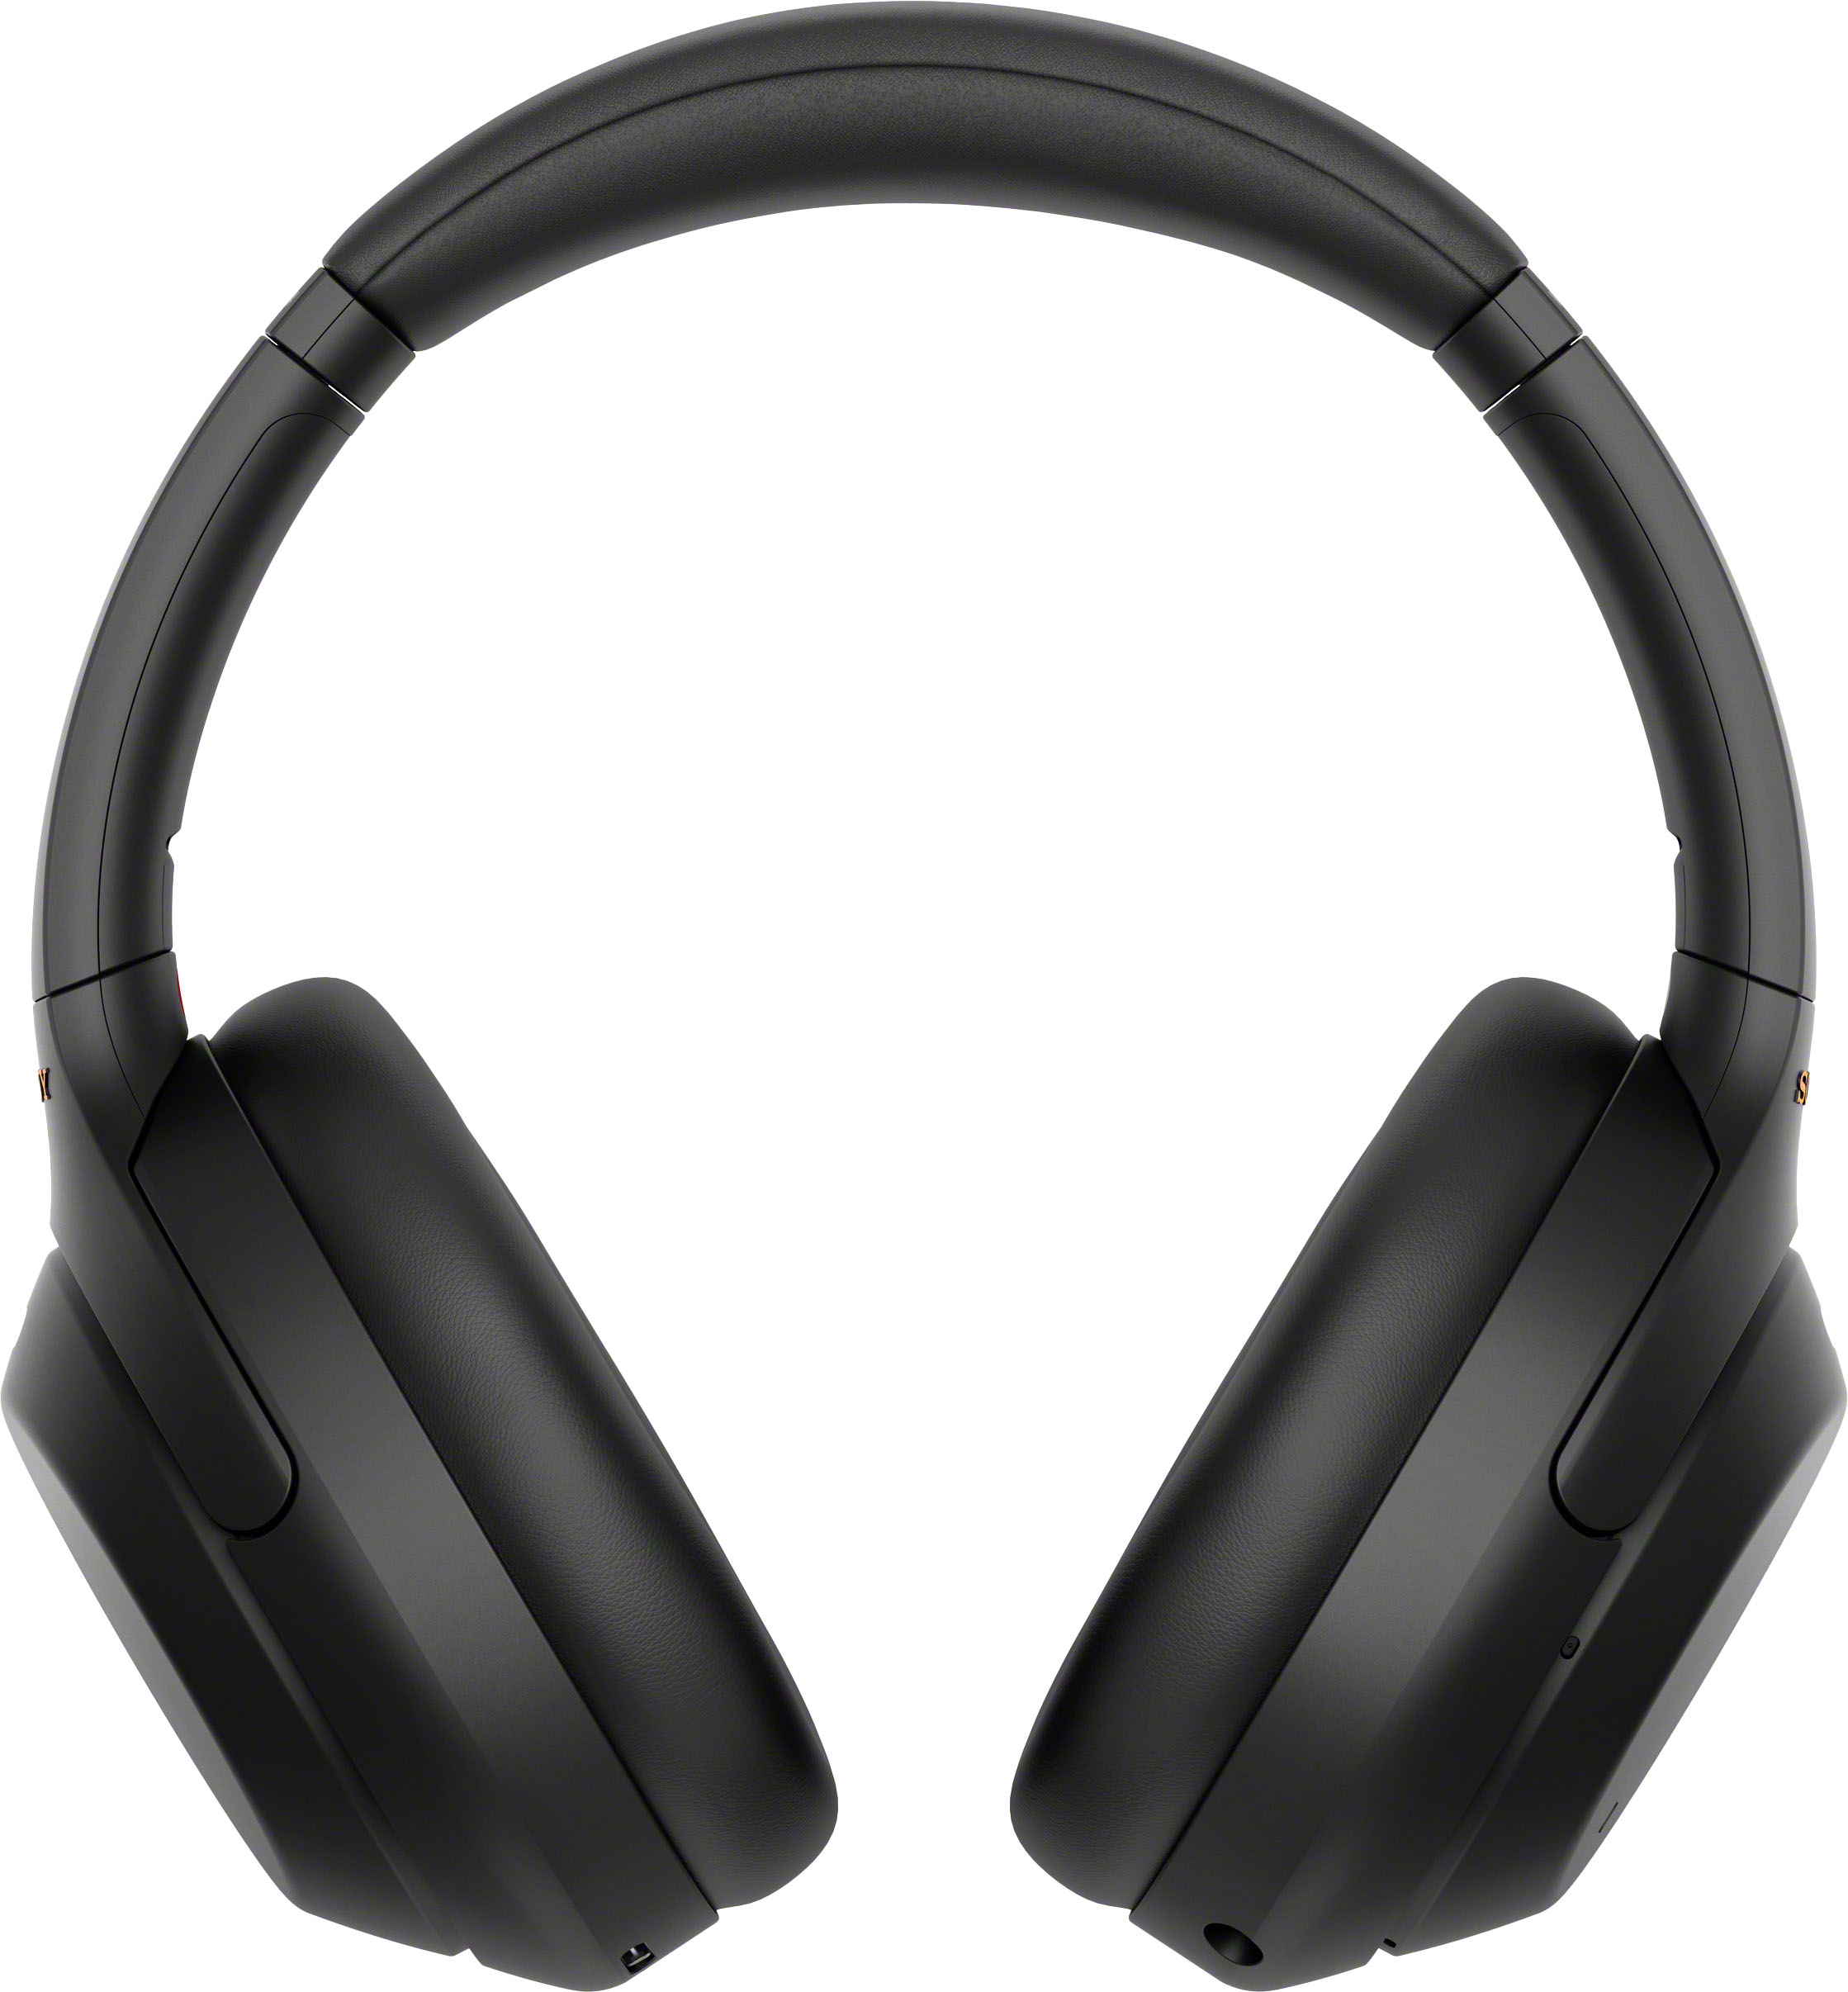 オーディオ機器 ヘッドフォン Sony WH-1000XM4 Wireless Noise-Cancelling Over-the-Ear Headphones Black  WH1000XM4/B - Best Buy